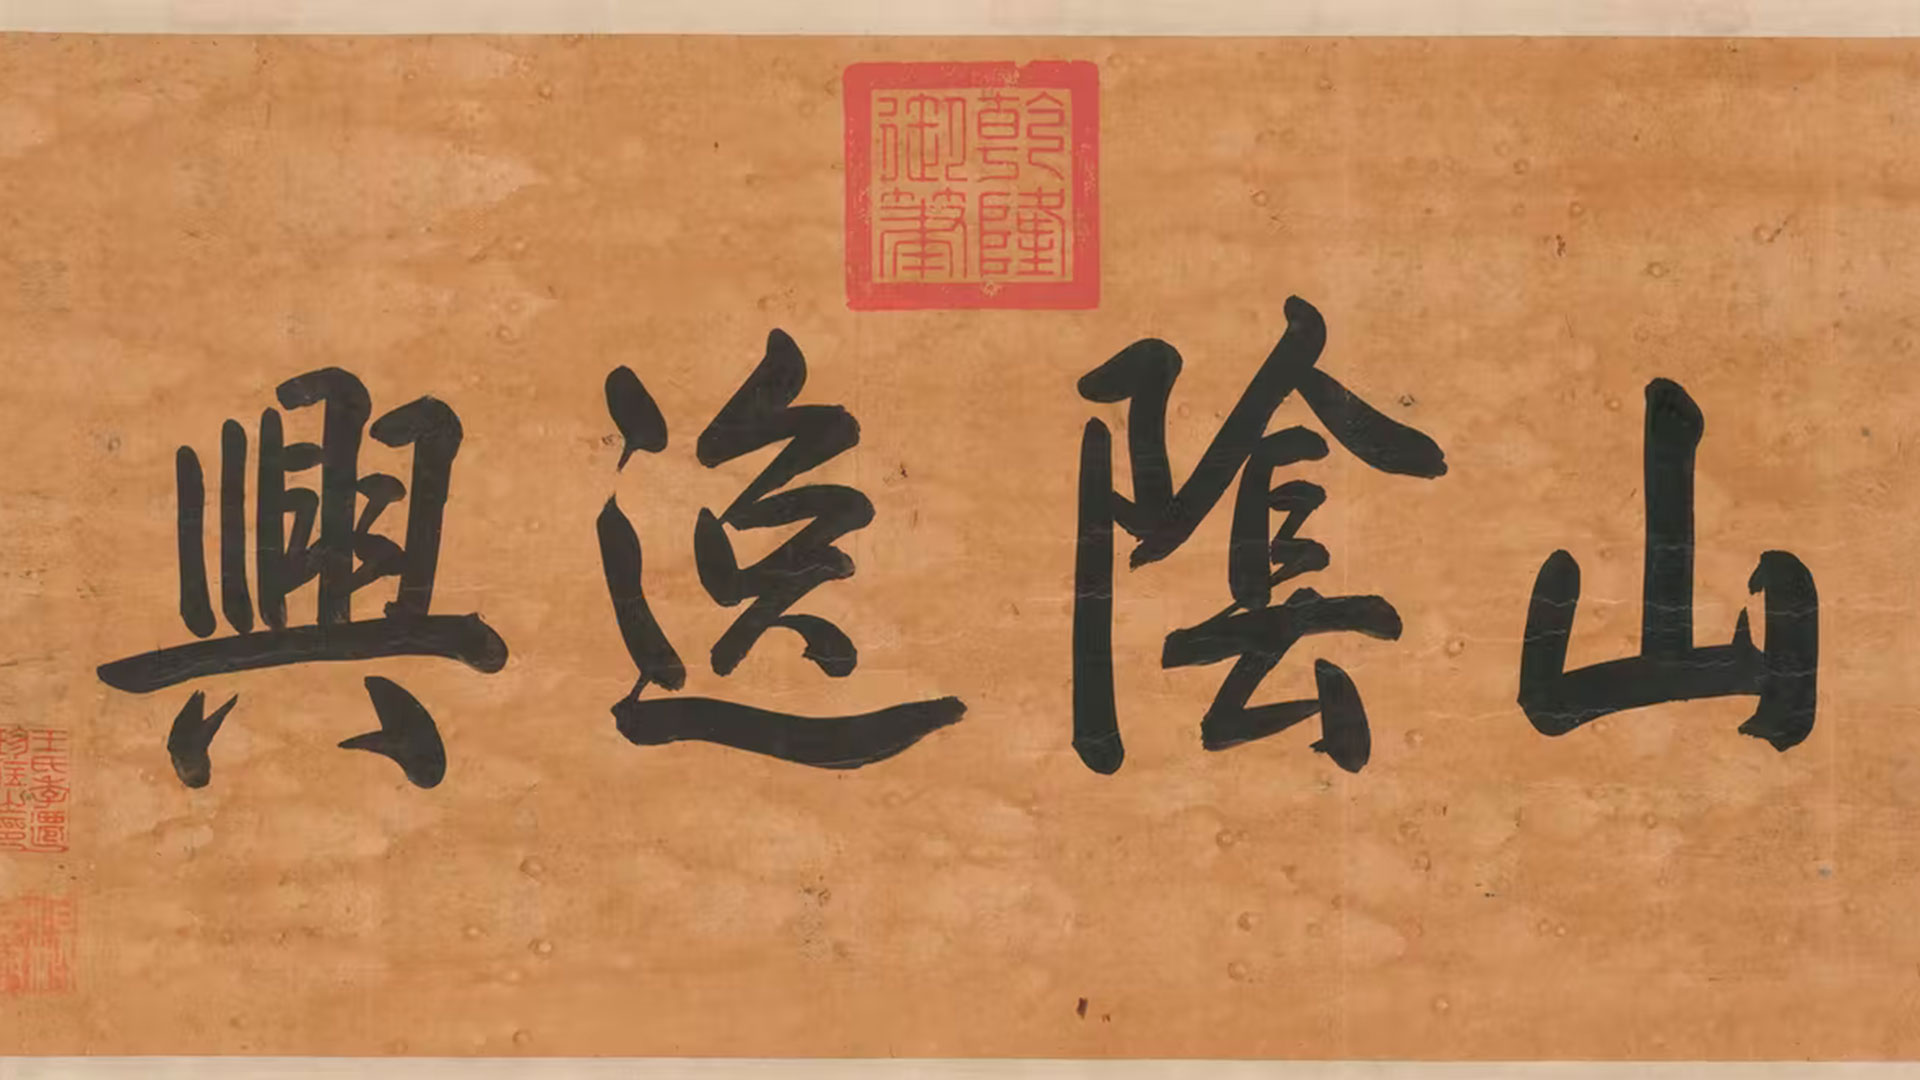 El arte de la abstracción: la maravillosa historia de la escritura china a lo largo de los siglos